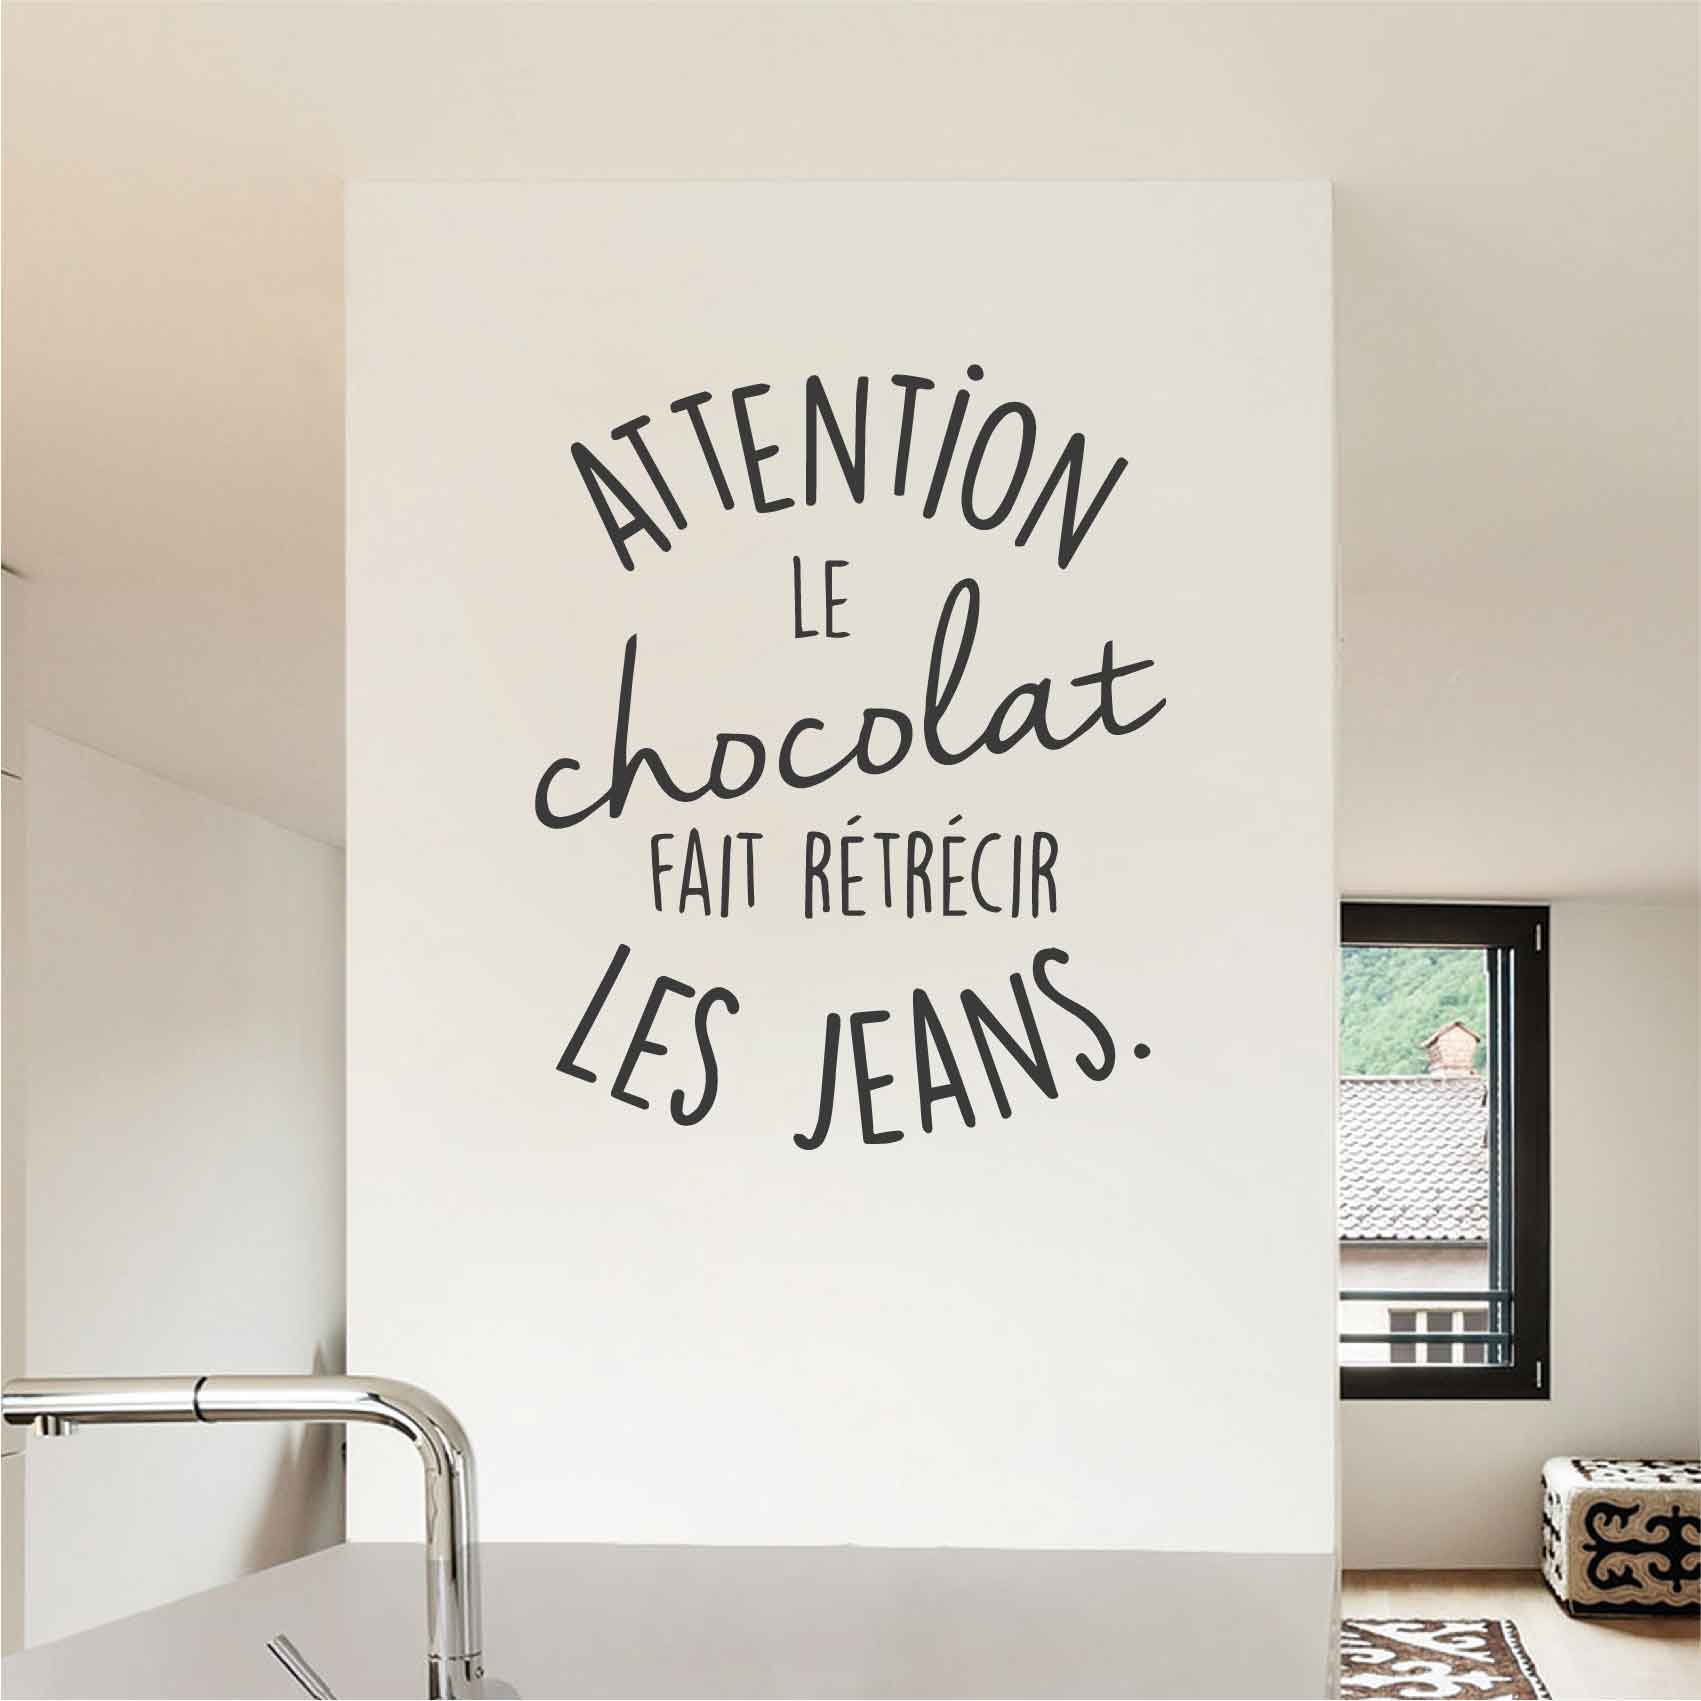 stickers-citation-chocolat-jeans-ref3citation-stickers-muraux-citations-sticker-mural-deco-femme-autocollant-salon-chambre-cuisine